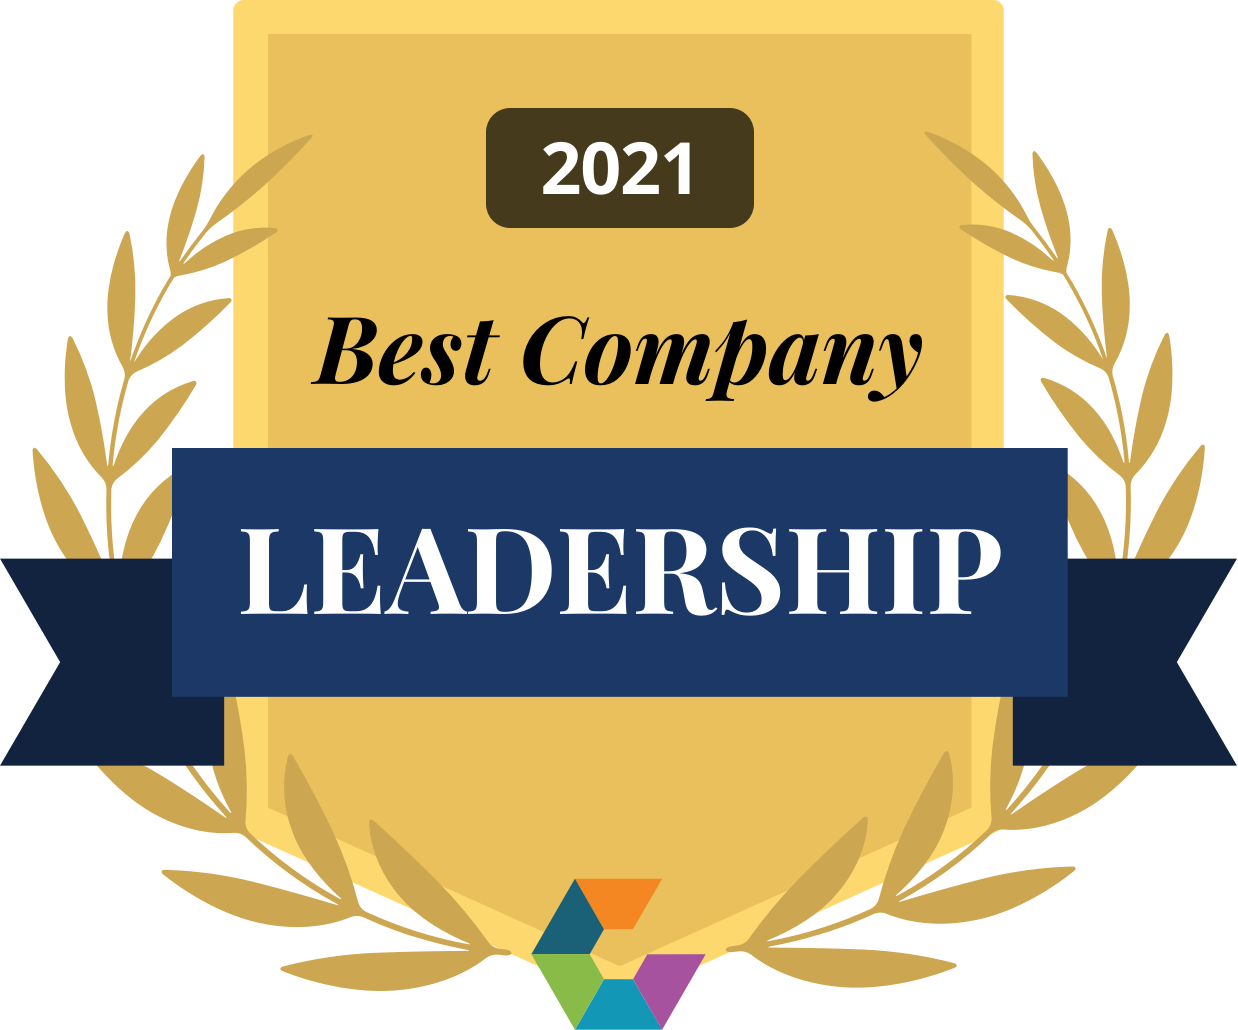 Best Company Leadership award